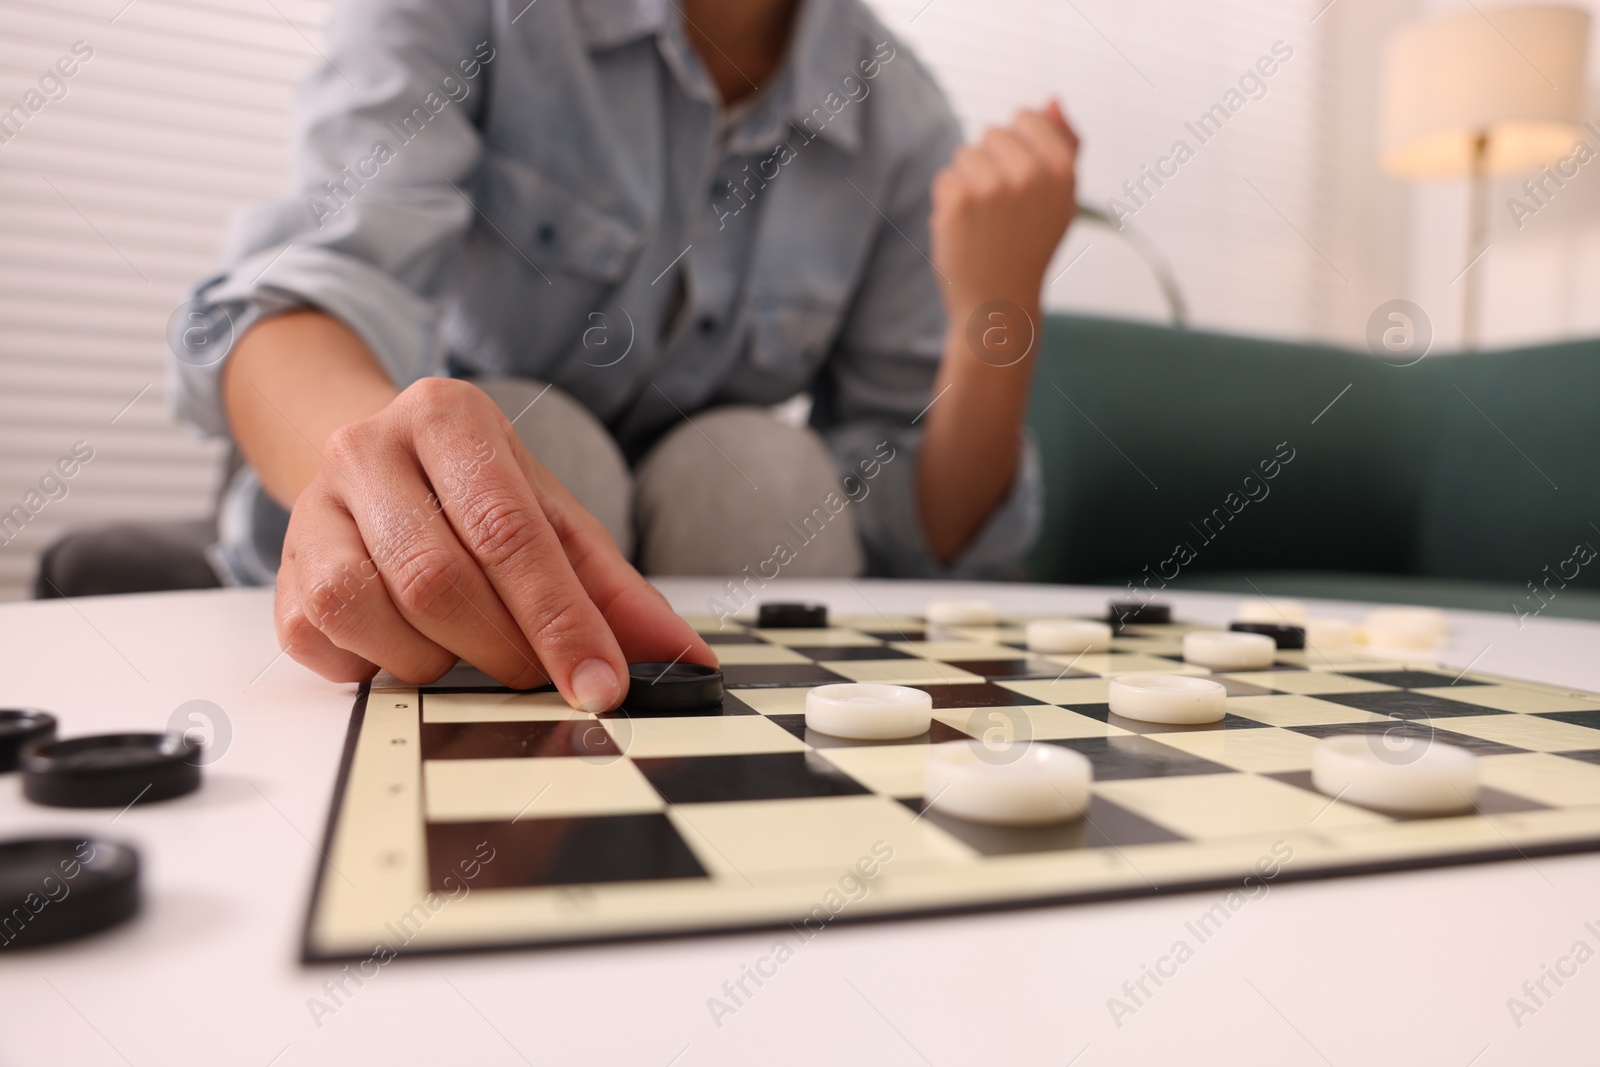 Photo of Woman enjoying playing checkers at home, closeup